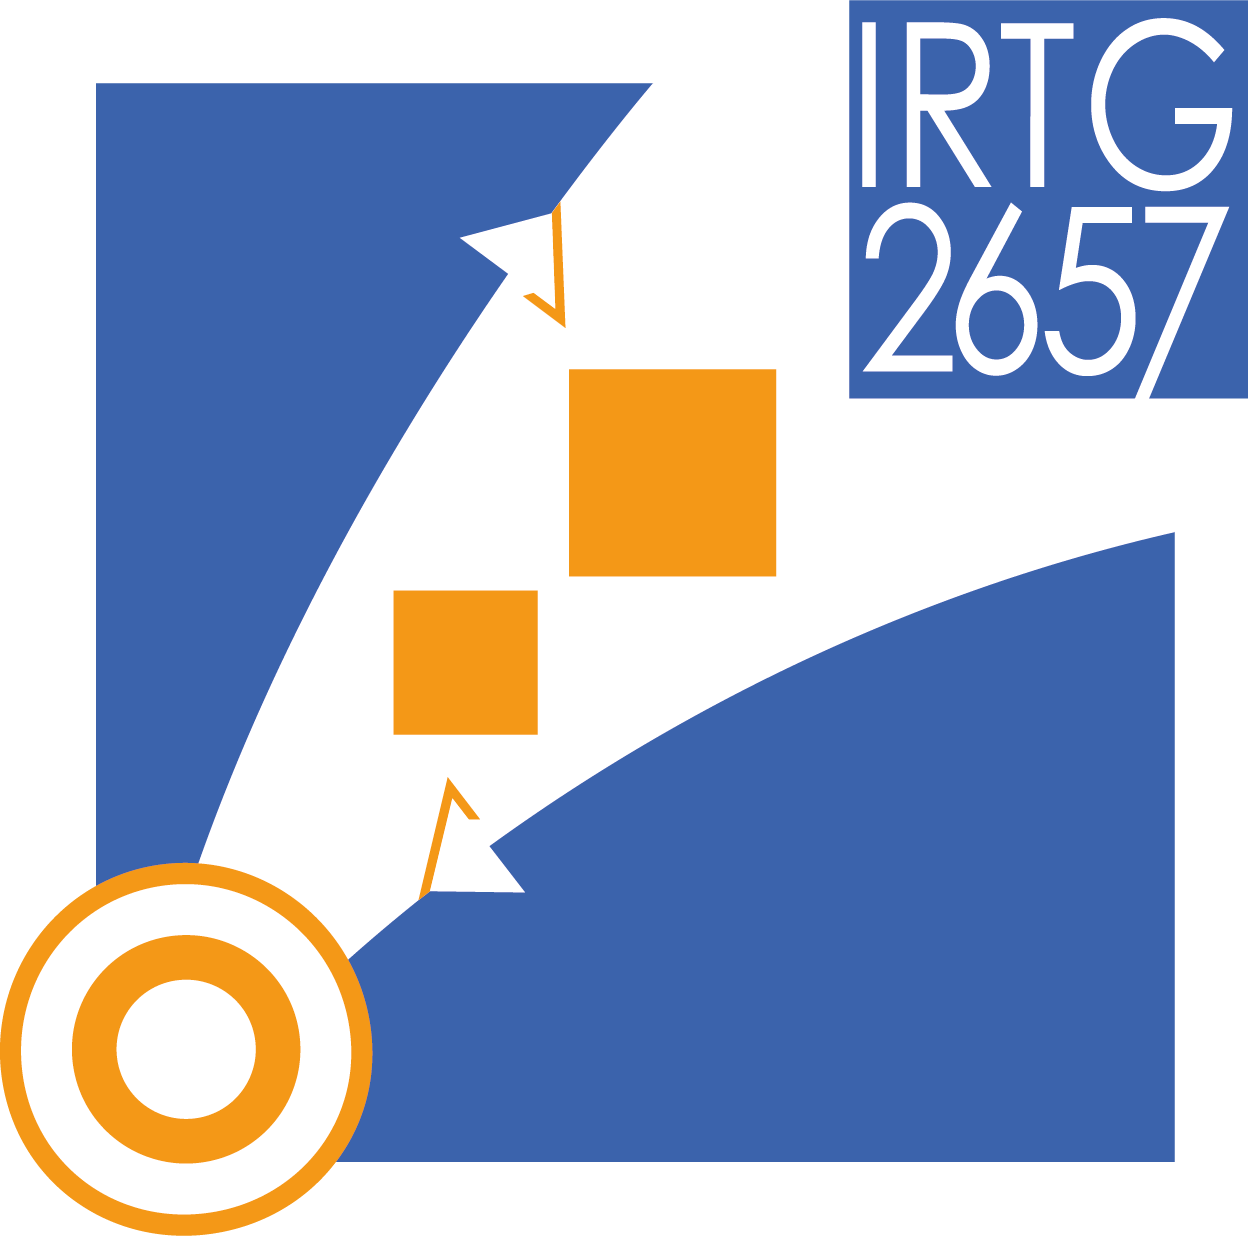 Logo IRTG 2657